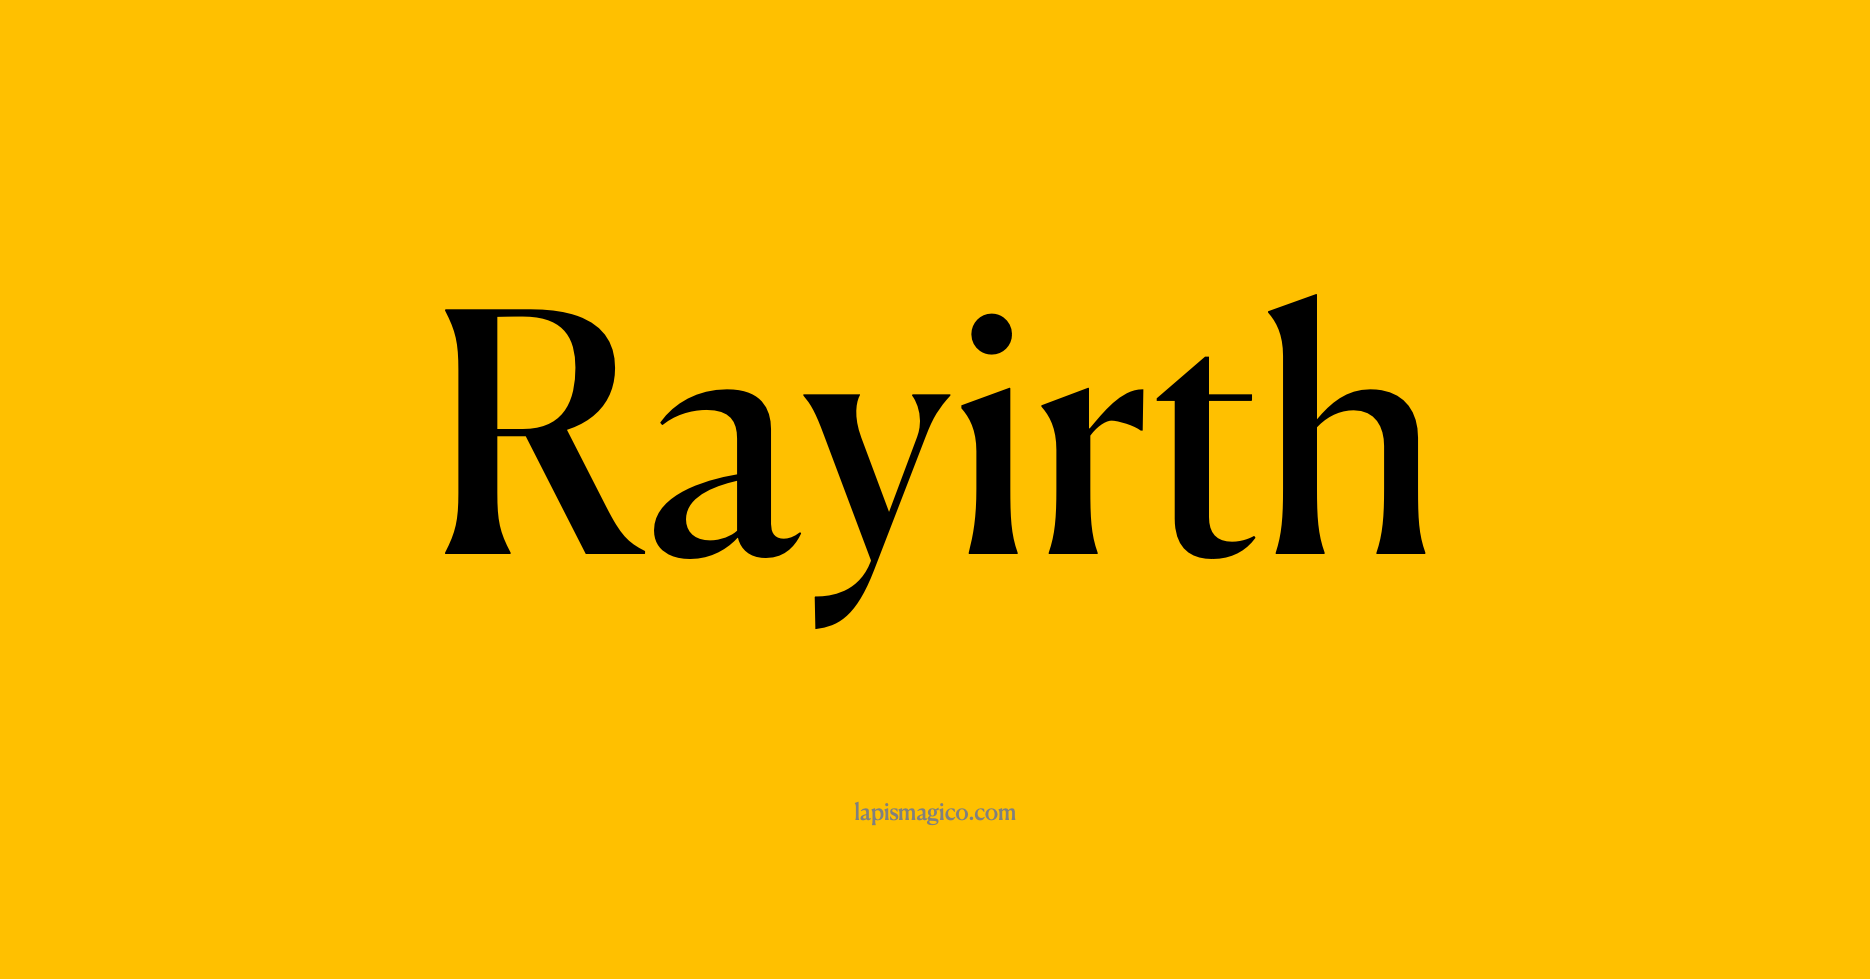 Nome Rayirth, ficha divertida com pontilhado para crianças